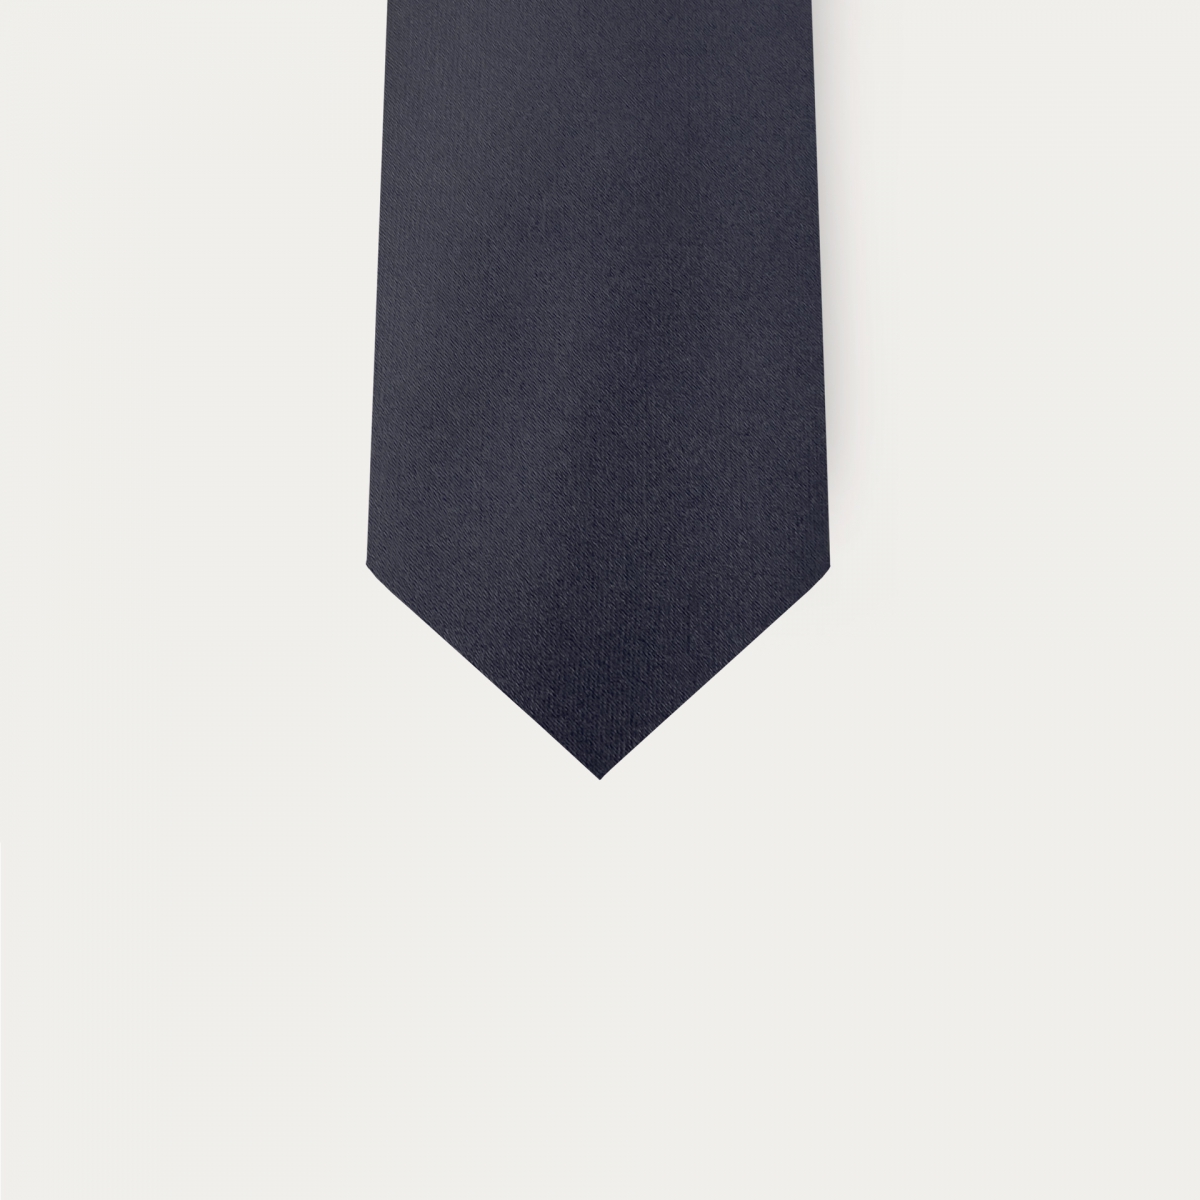 Navy blue satin silk tie